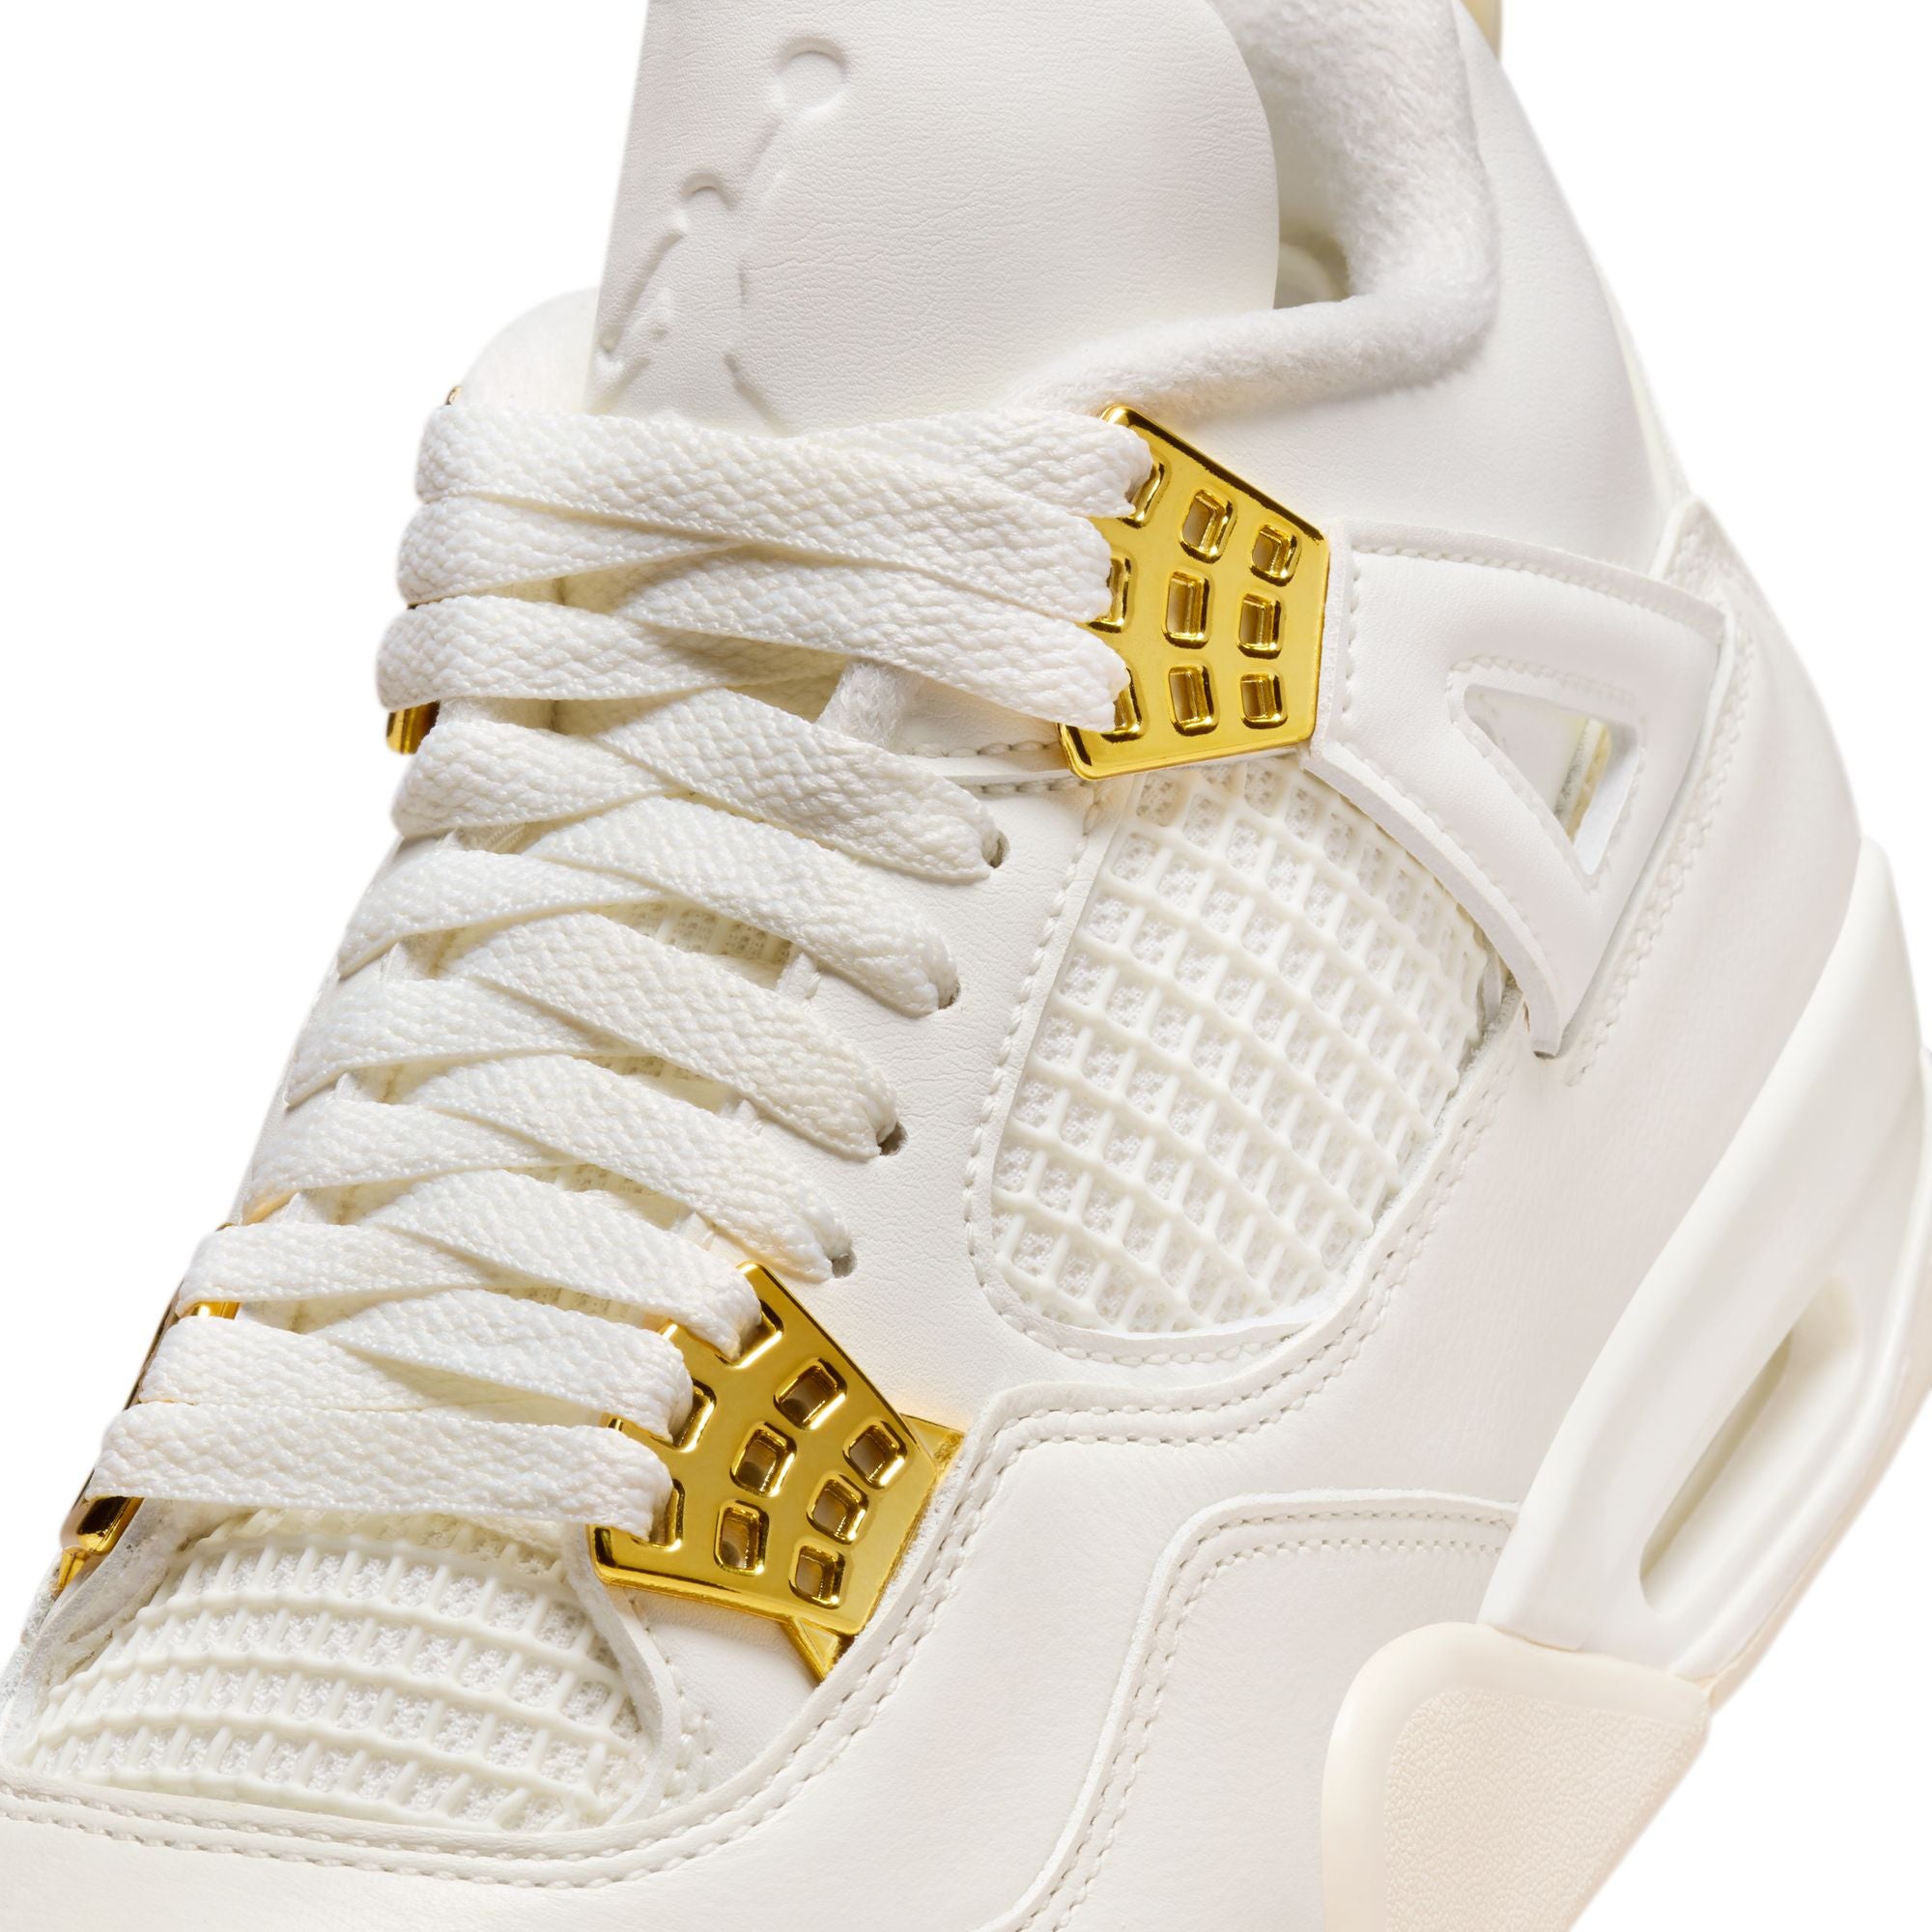 Womens Air Jordan 4 Retro 'White/Gold'